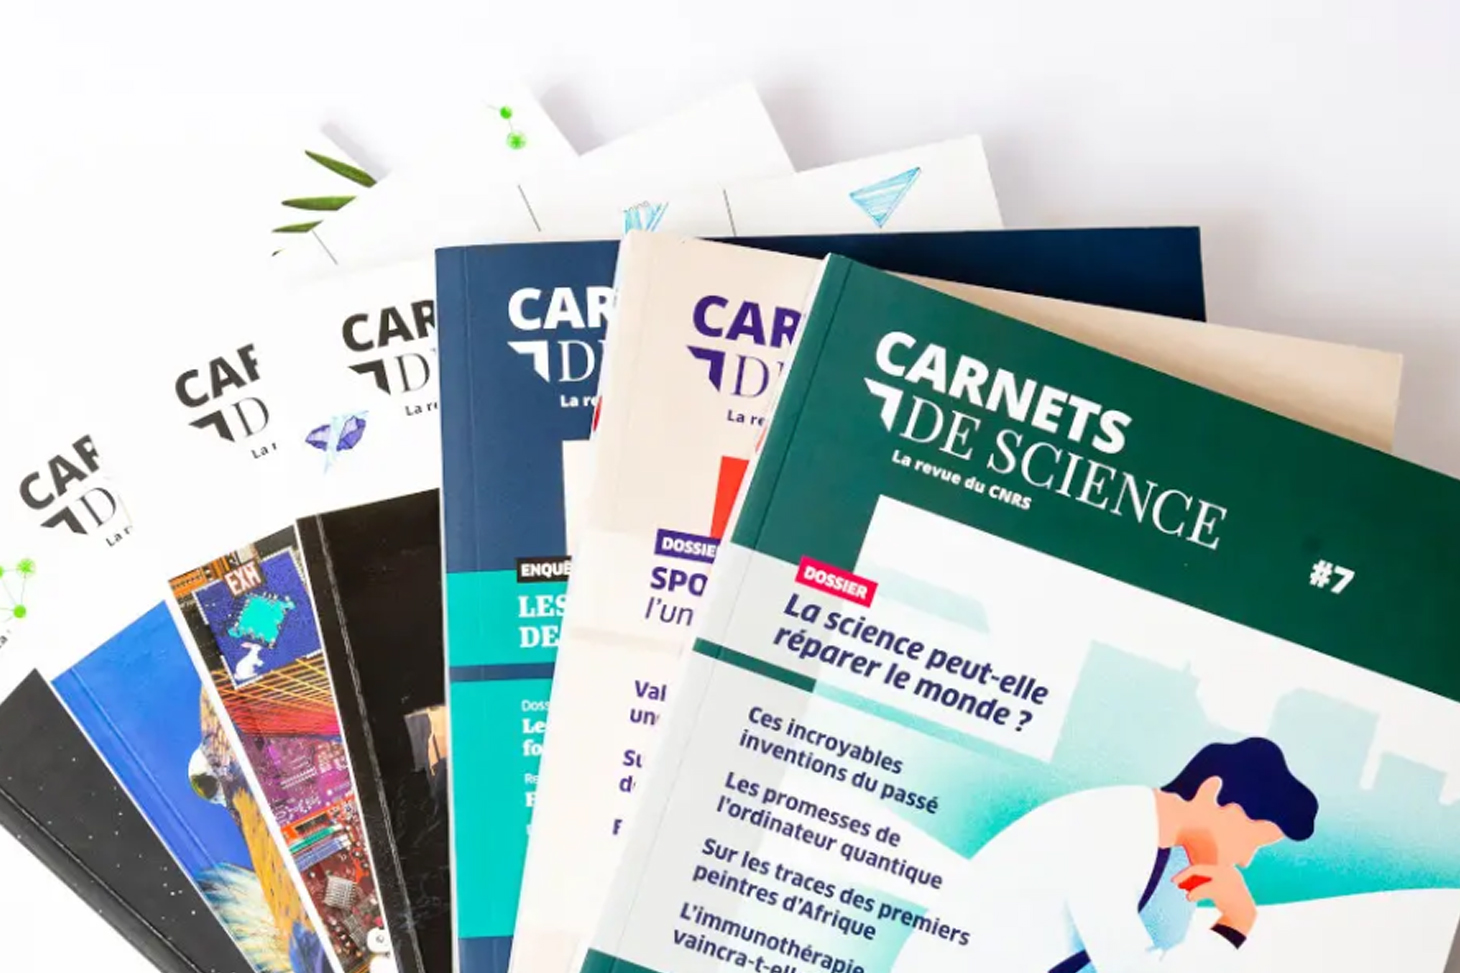 Les Carnets de science du CNRS